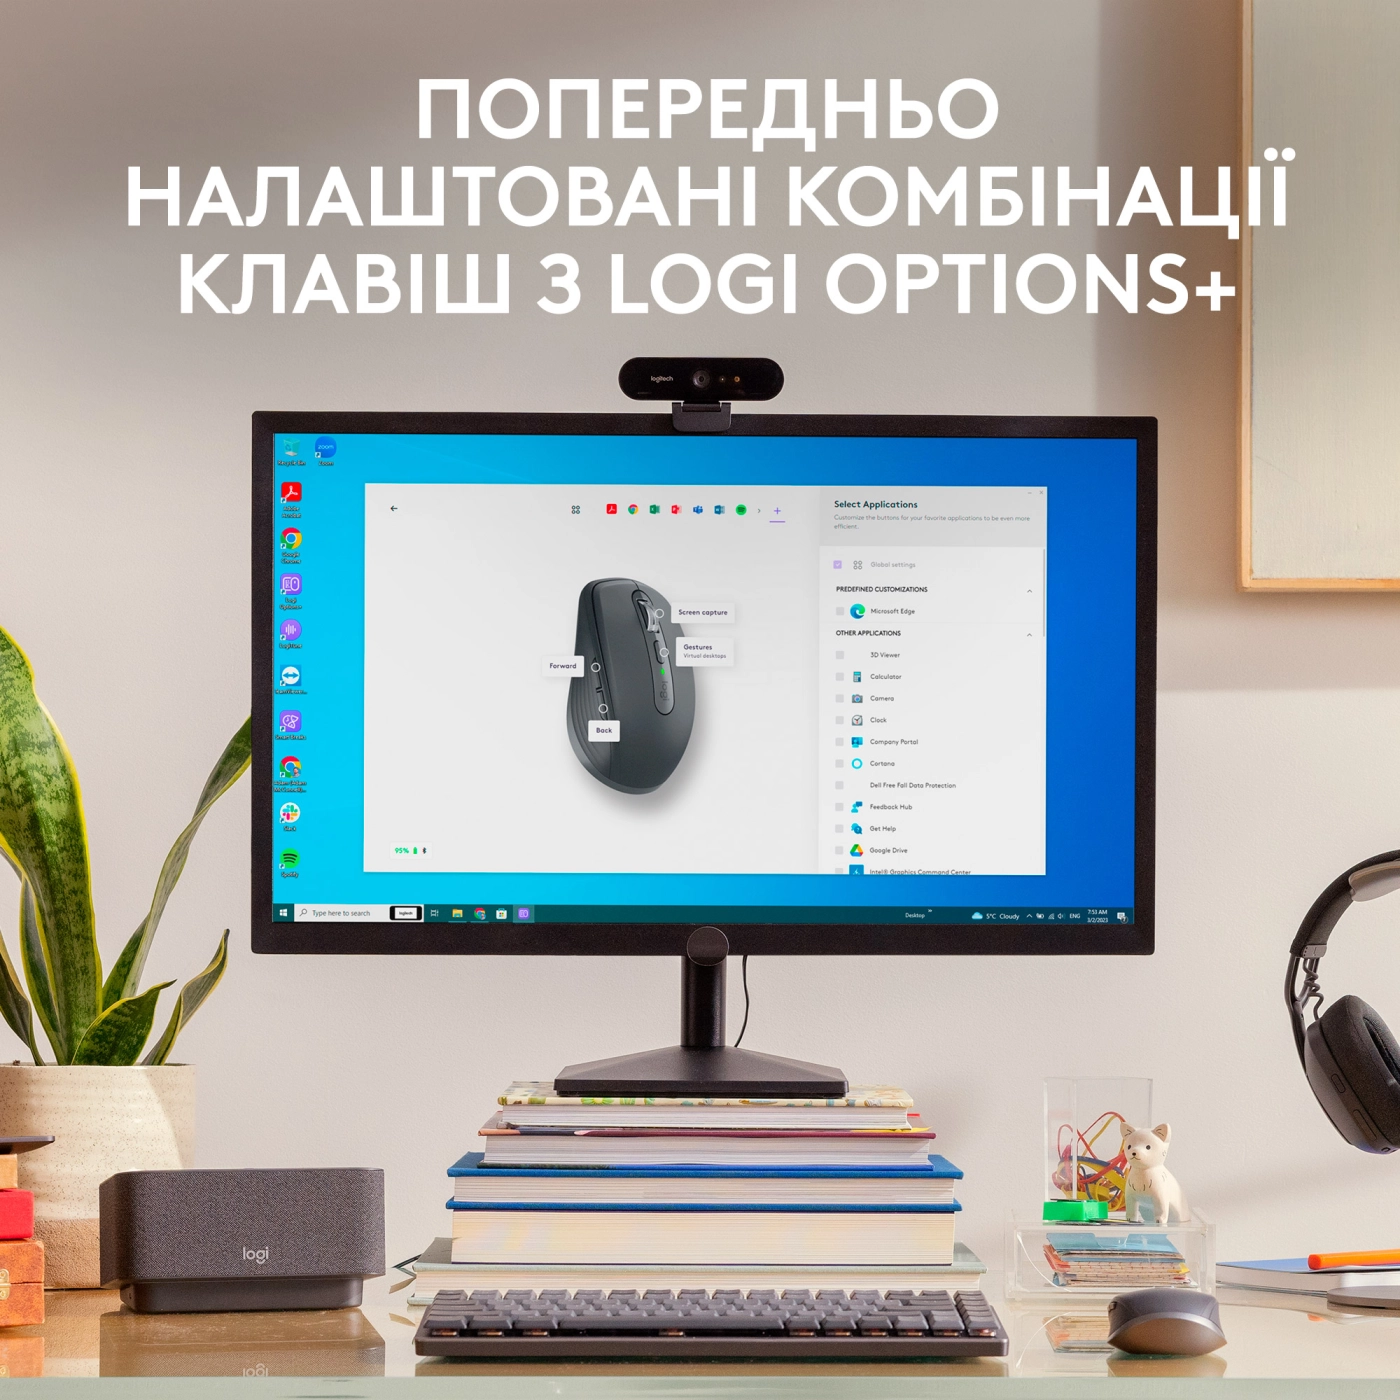 Купить Мышь Logitech MX Anywhere 3S for Business Compact Performance Mouse pale-gaey 2.4GHZ/BT (910-006959) - фото 7